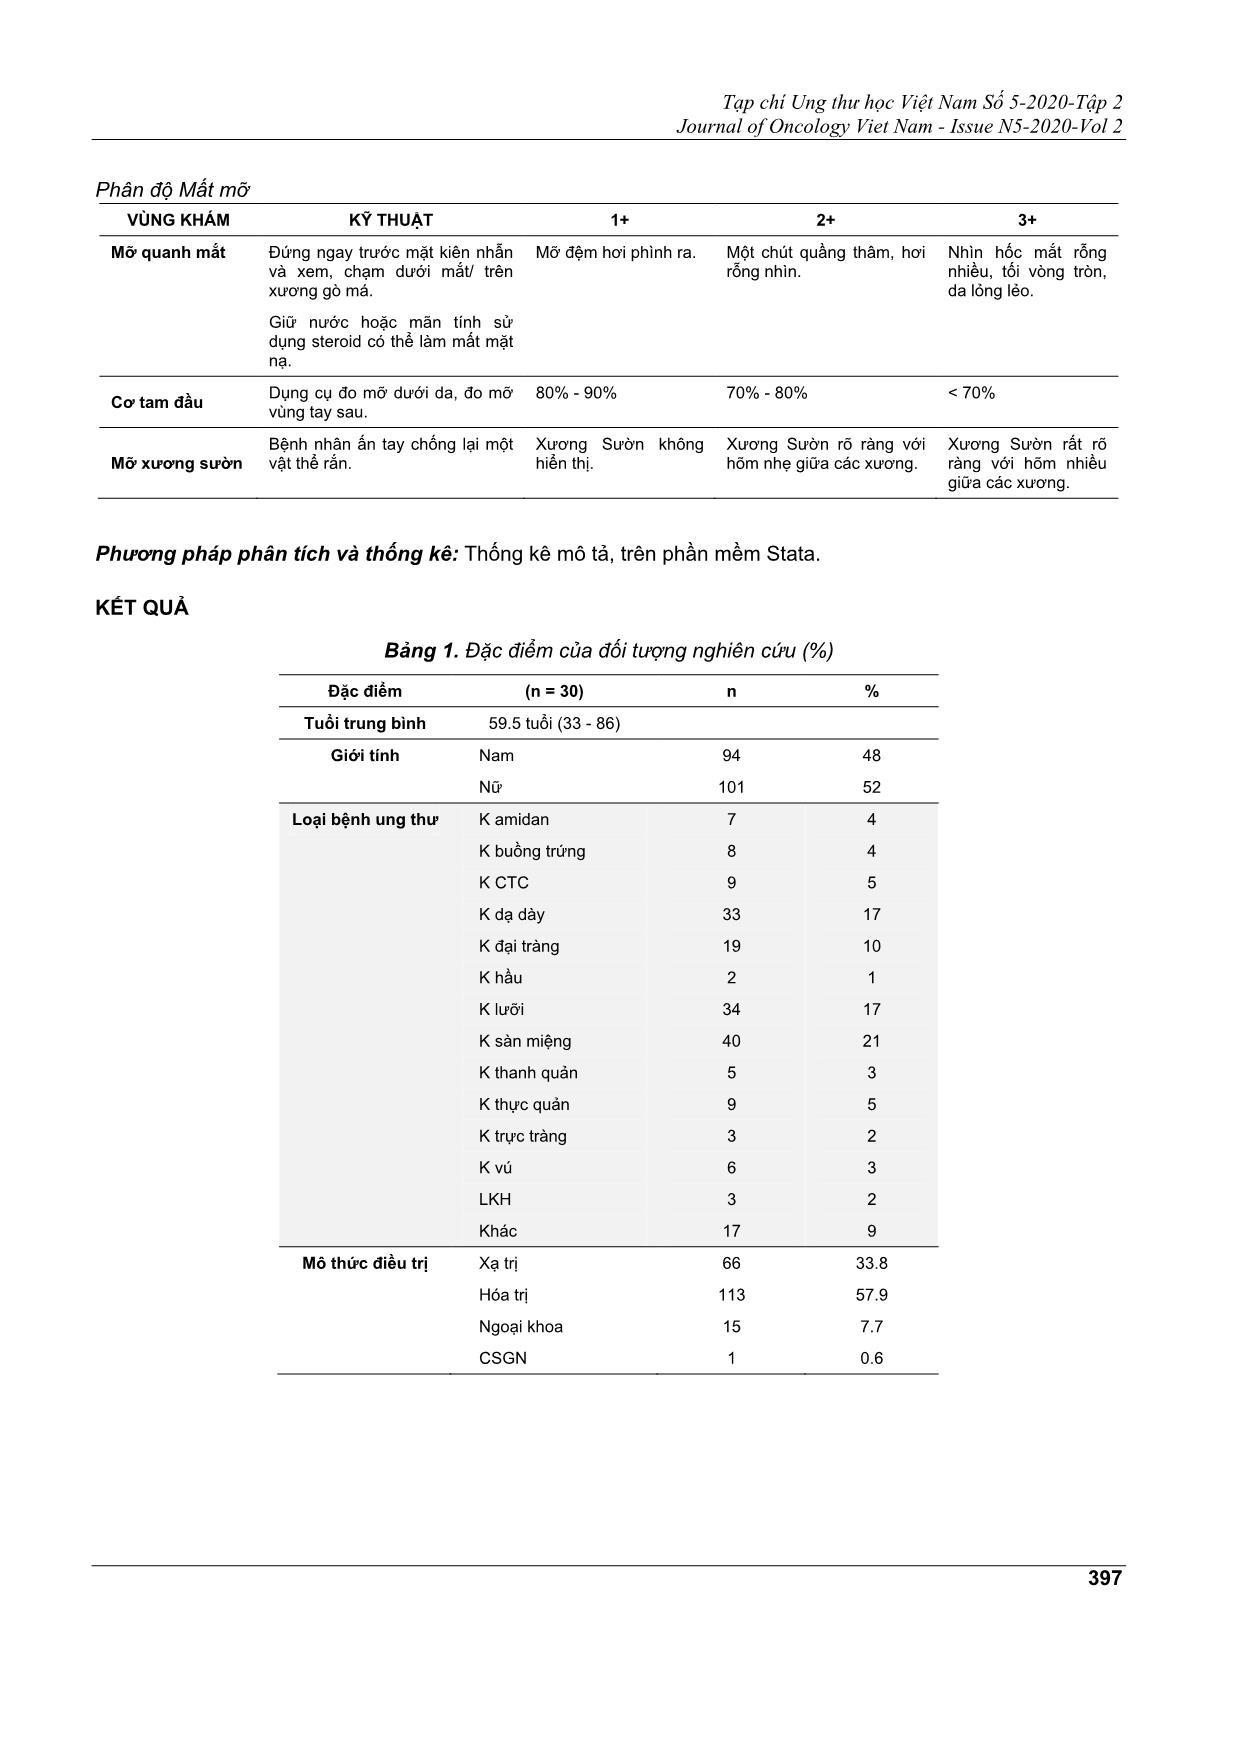 So sánh tỷ lệ phát hiện suy dinh dưỡng của bệnh nhân ung thư theo thang điểm PG - Sga so với phiếu đánh giá tình trạng dinh dưỡng tại khoa dinh dưỡng bệnh viện ung bướu TP. HCM từ 01 / 5 / 2020 đến 01 / 10 / 2020 trang 3